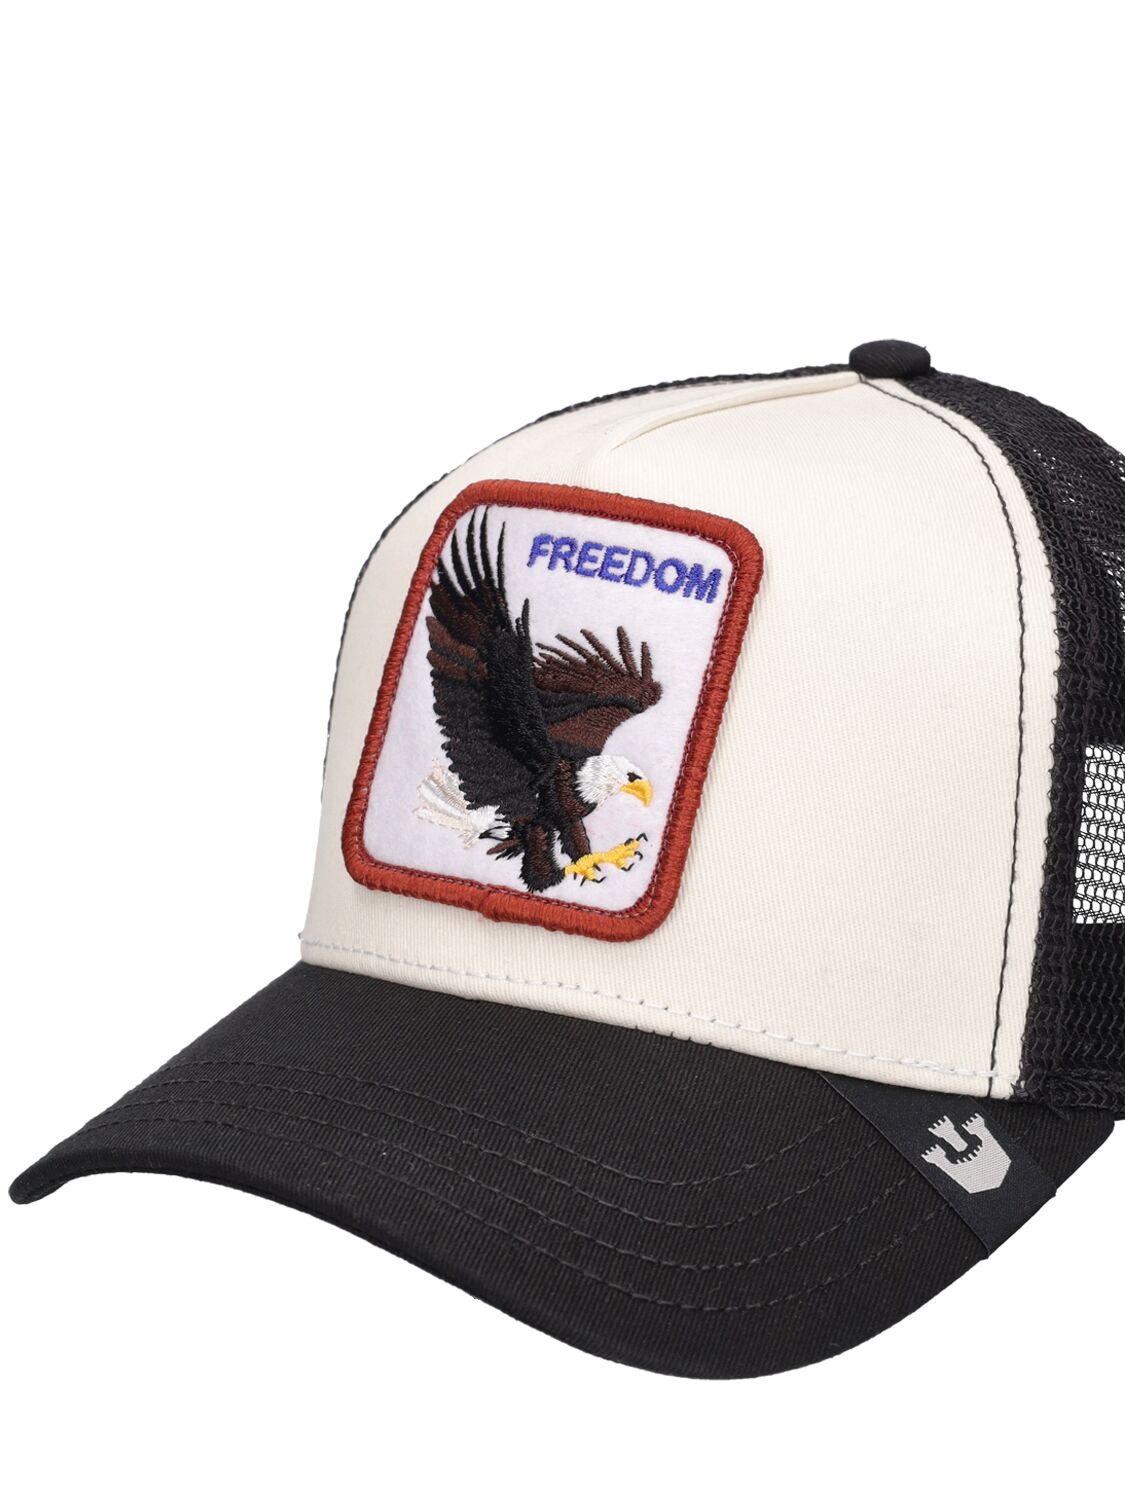 Goorin Bros. Eagle Freedom White Trucker Hat